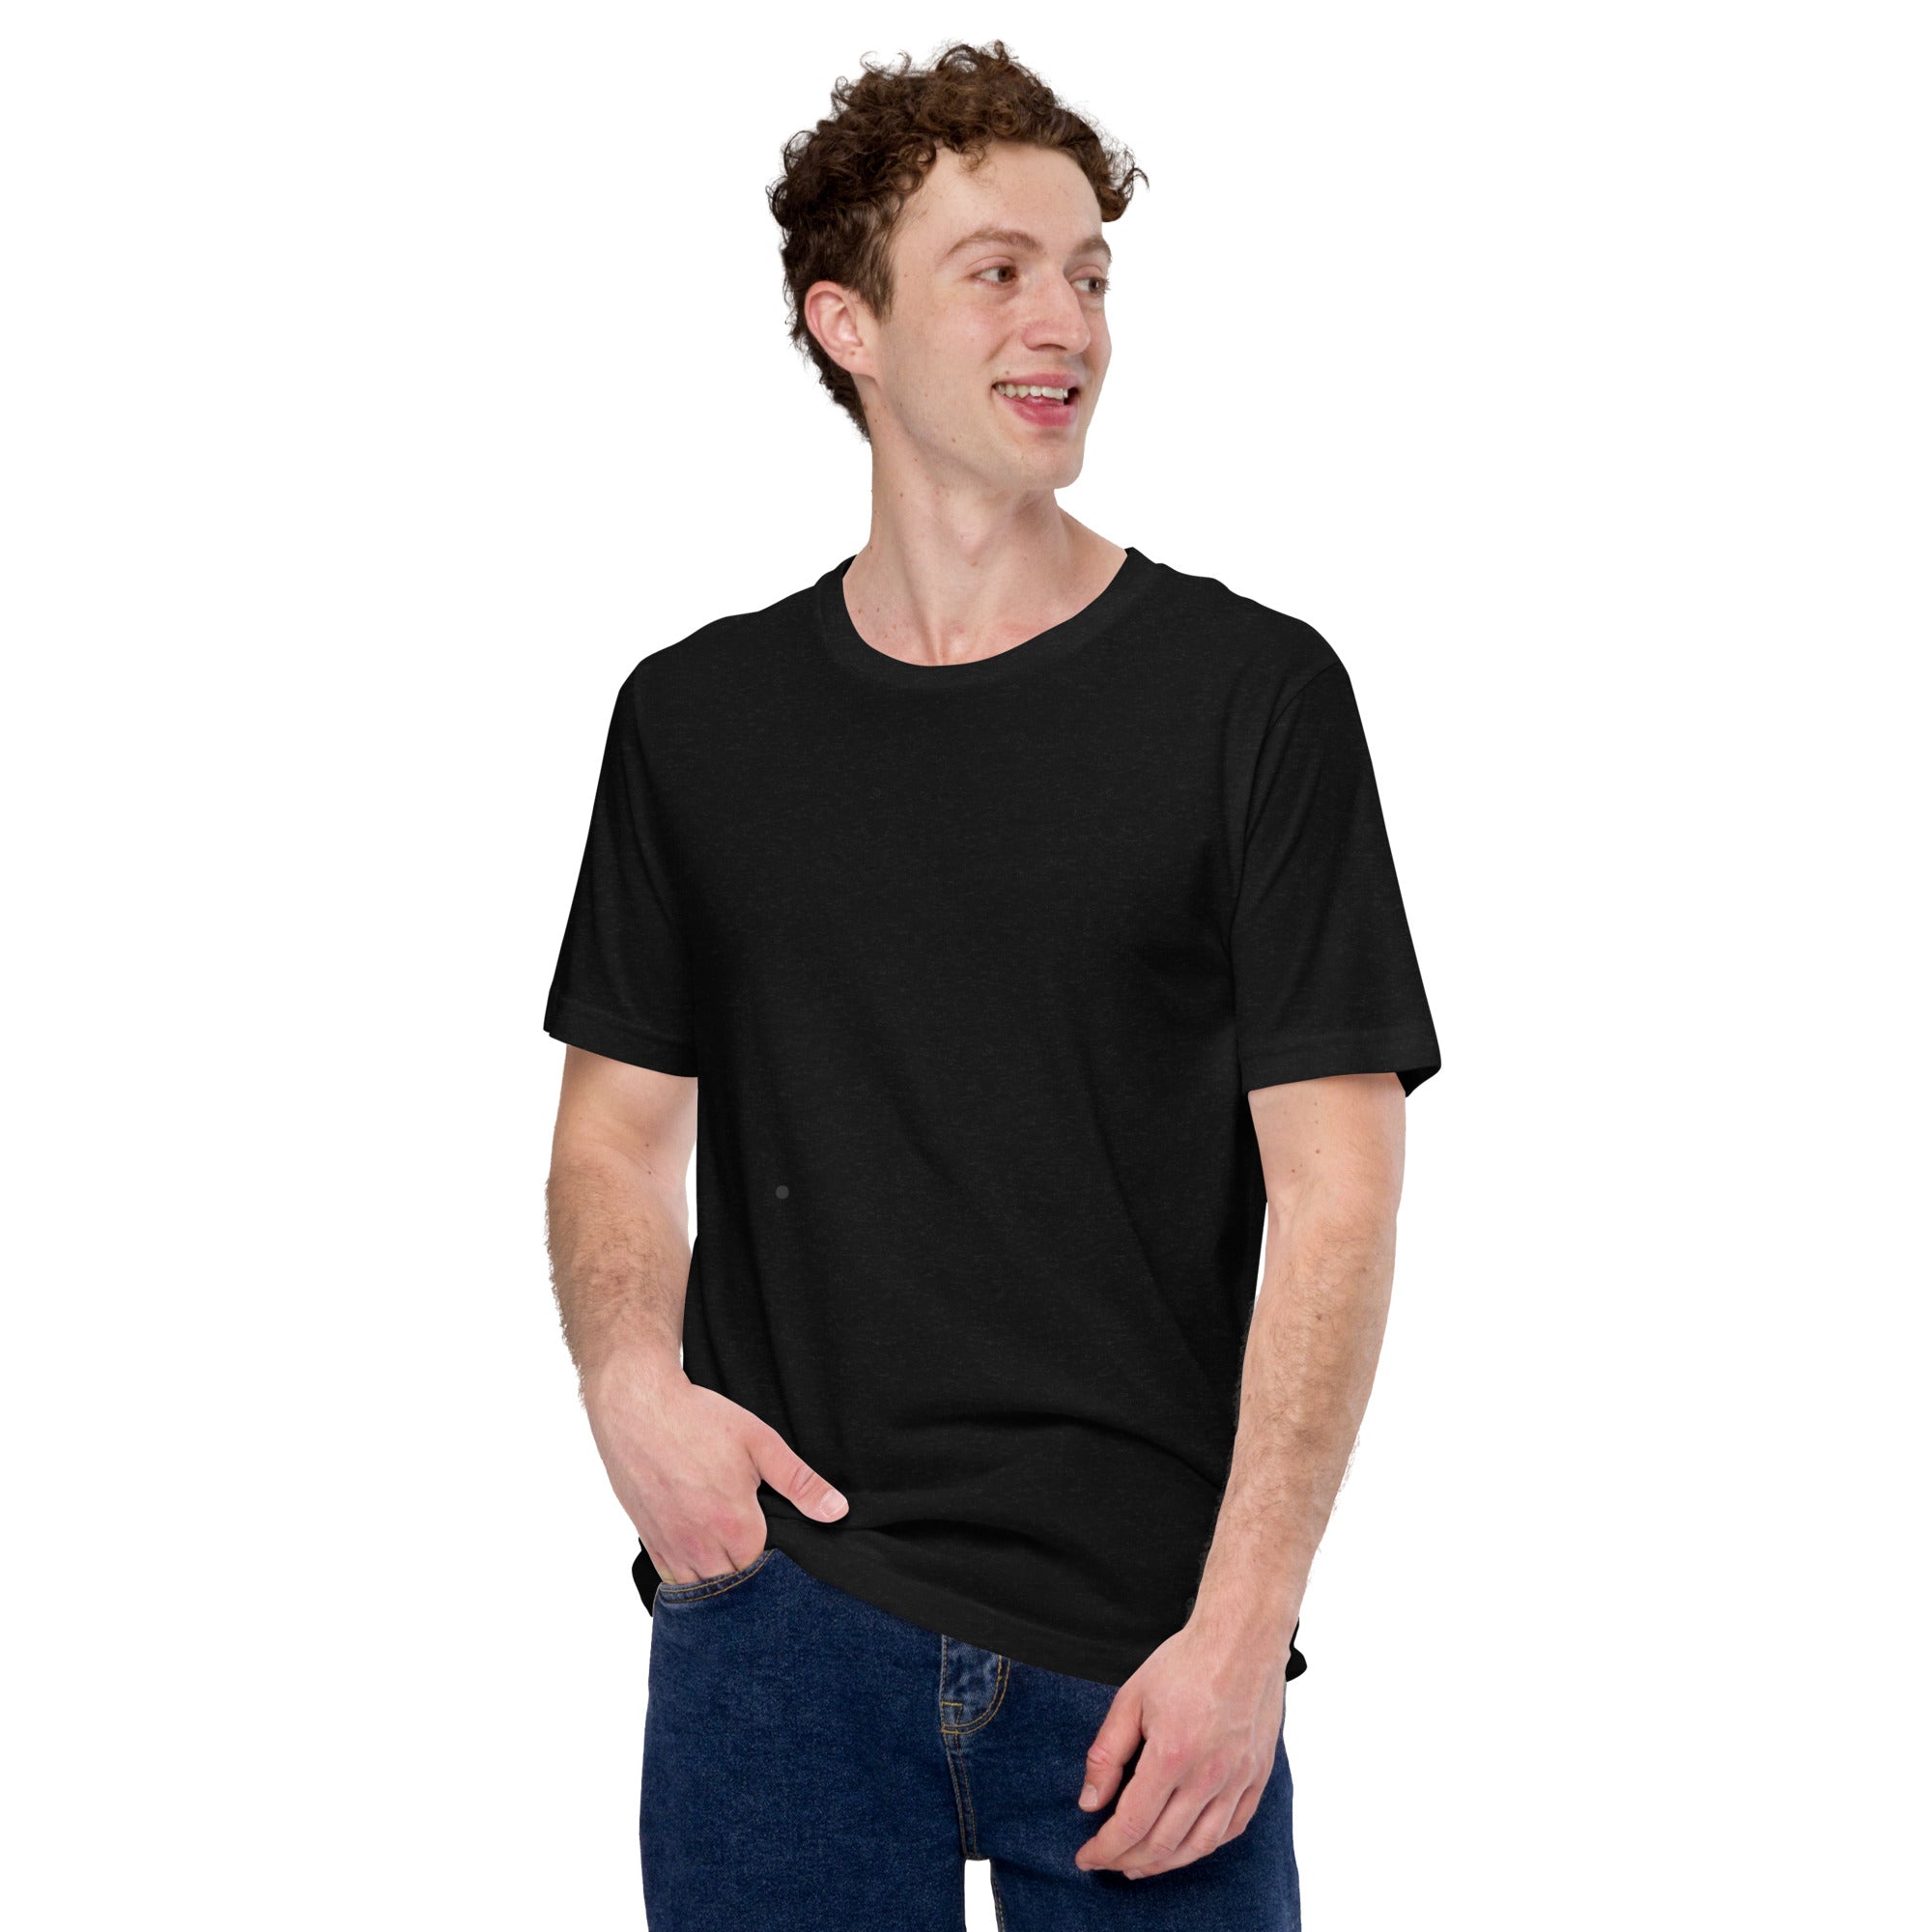 Best Quality cotton plain black t shirt for men half sleeve